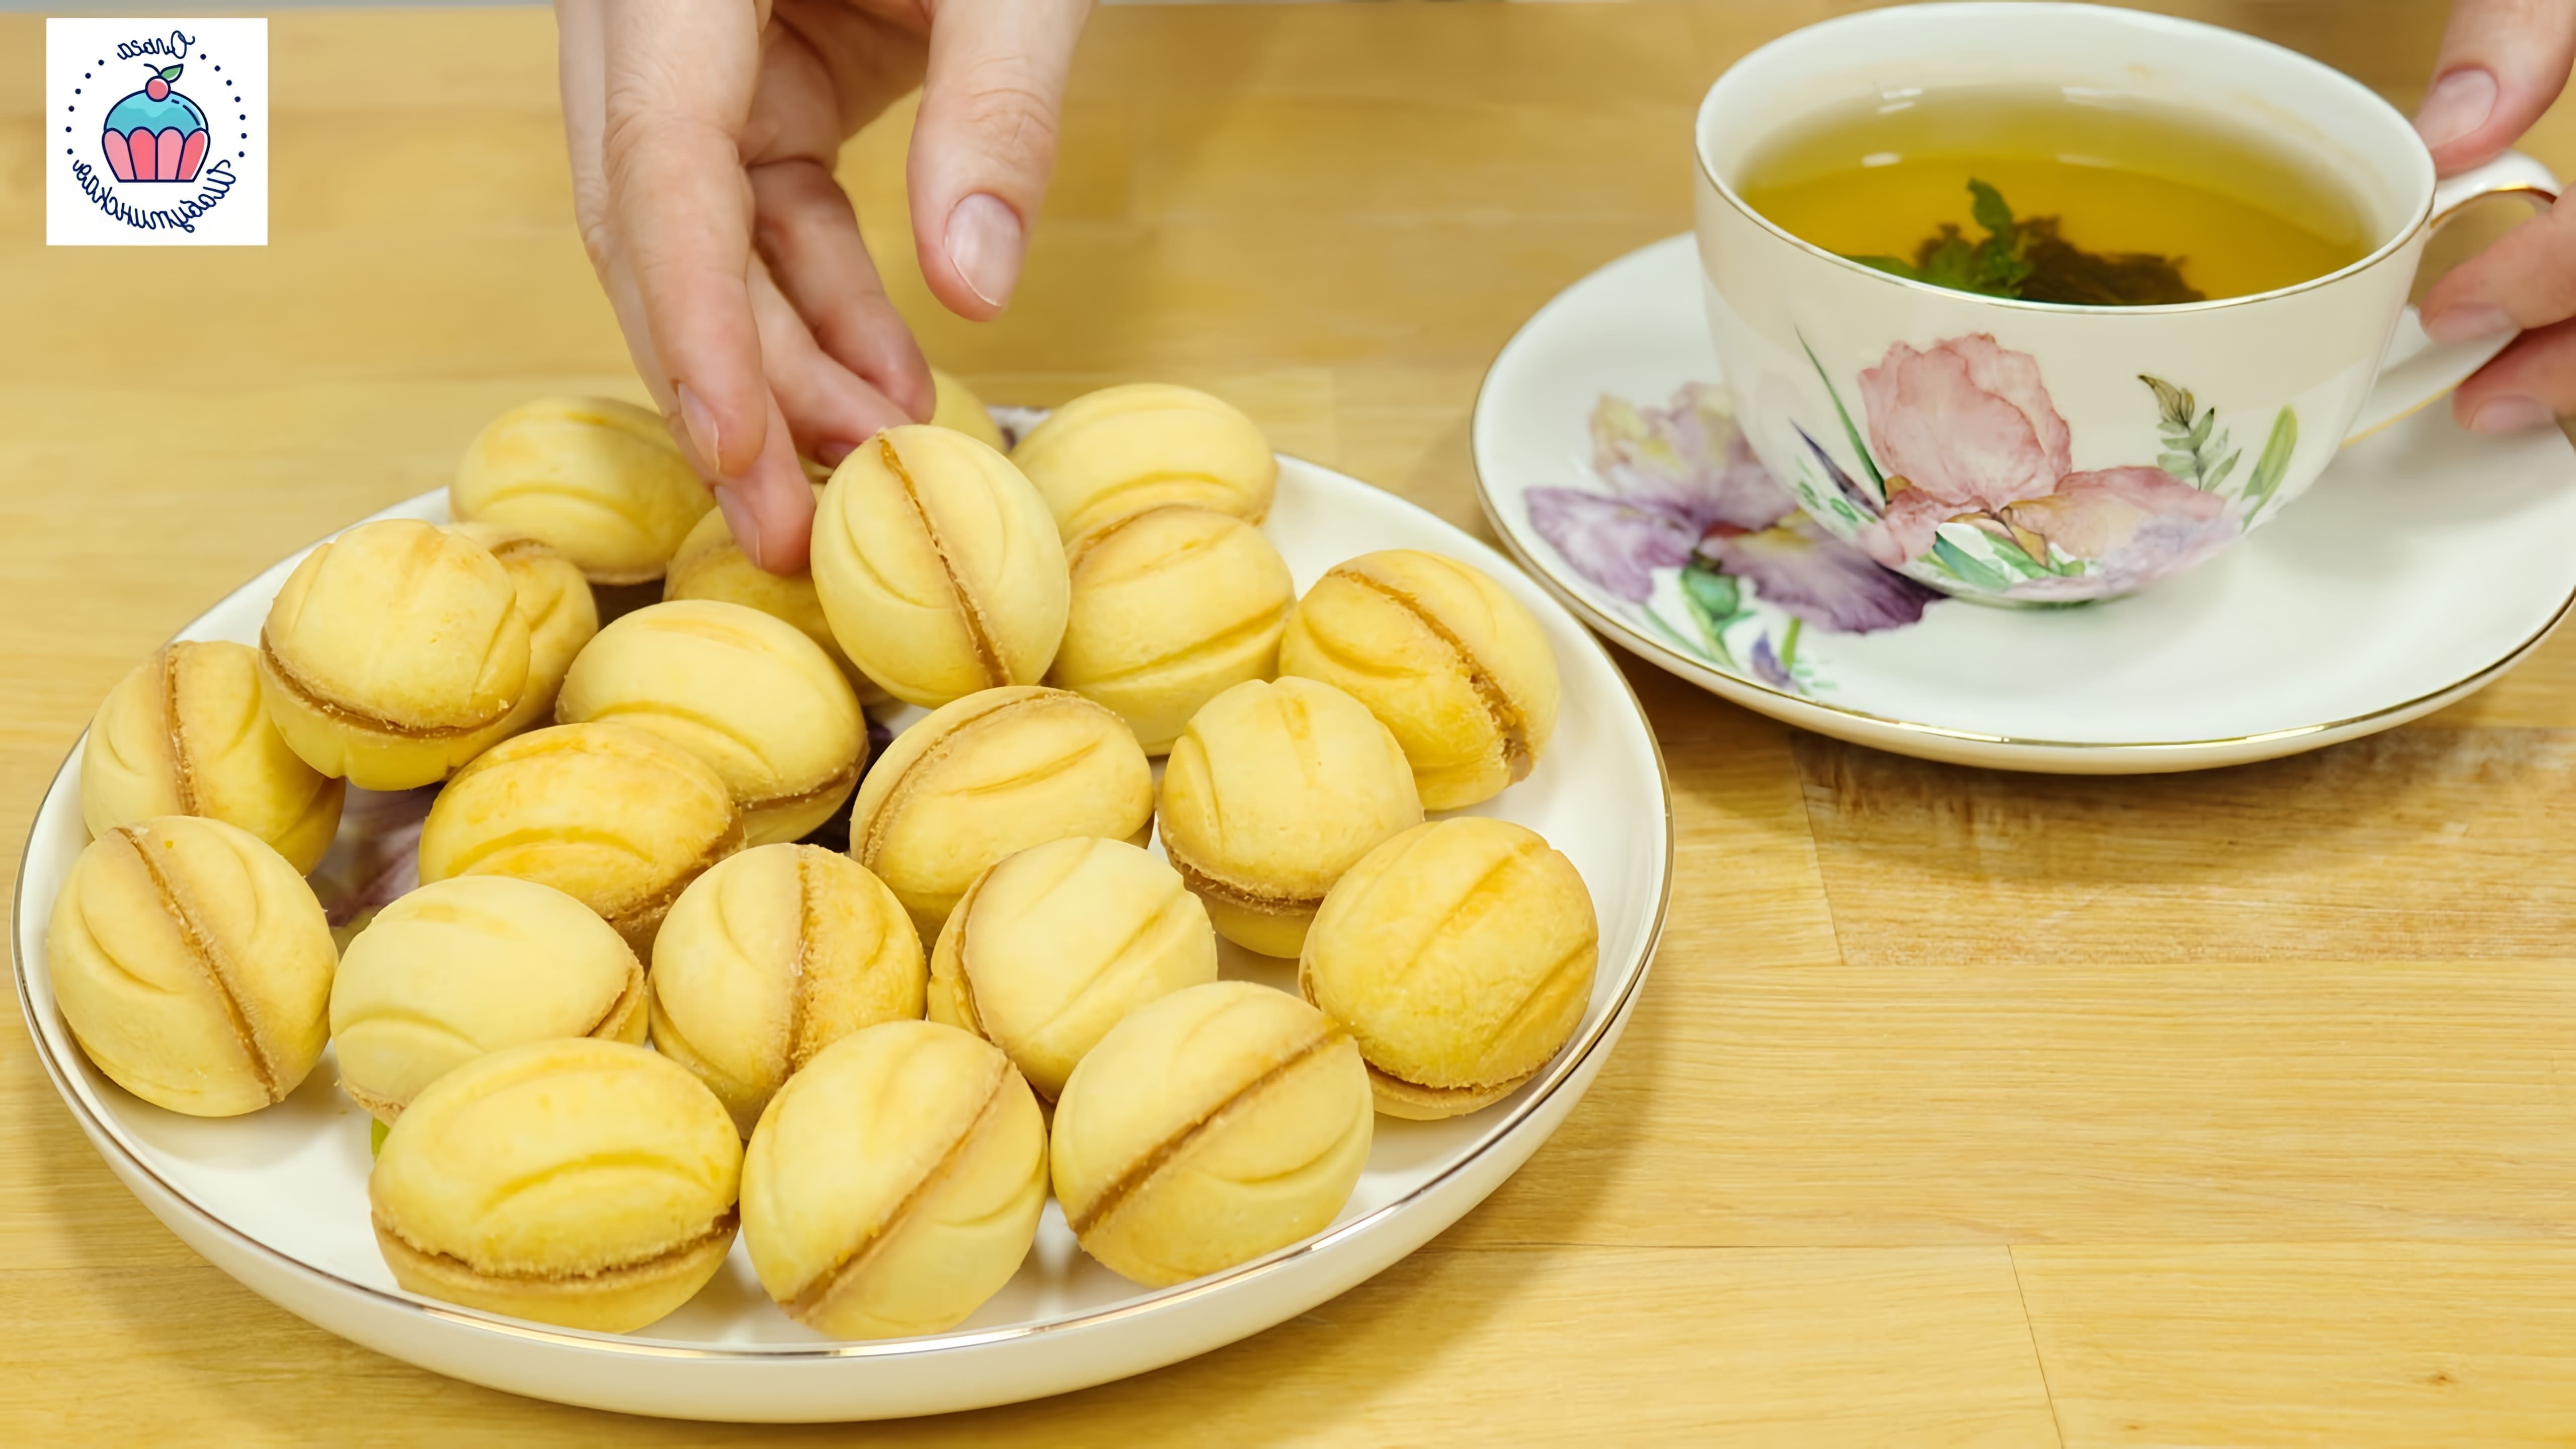 В этом видео демонстрируется рецепт приготовления песочных орешков со сгущенкой